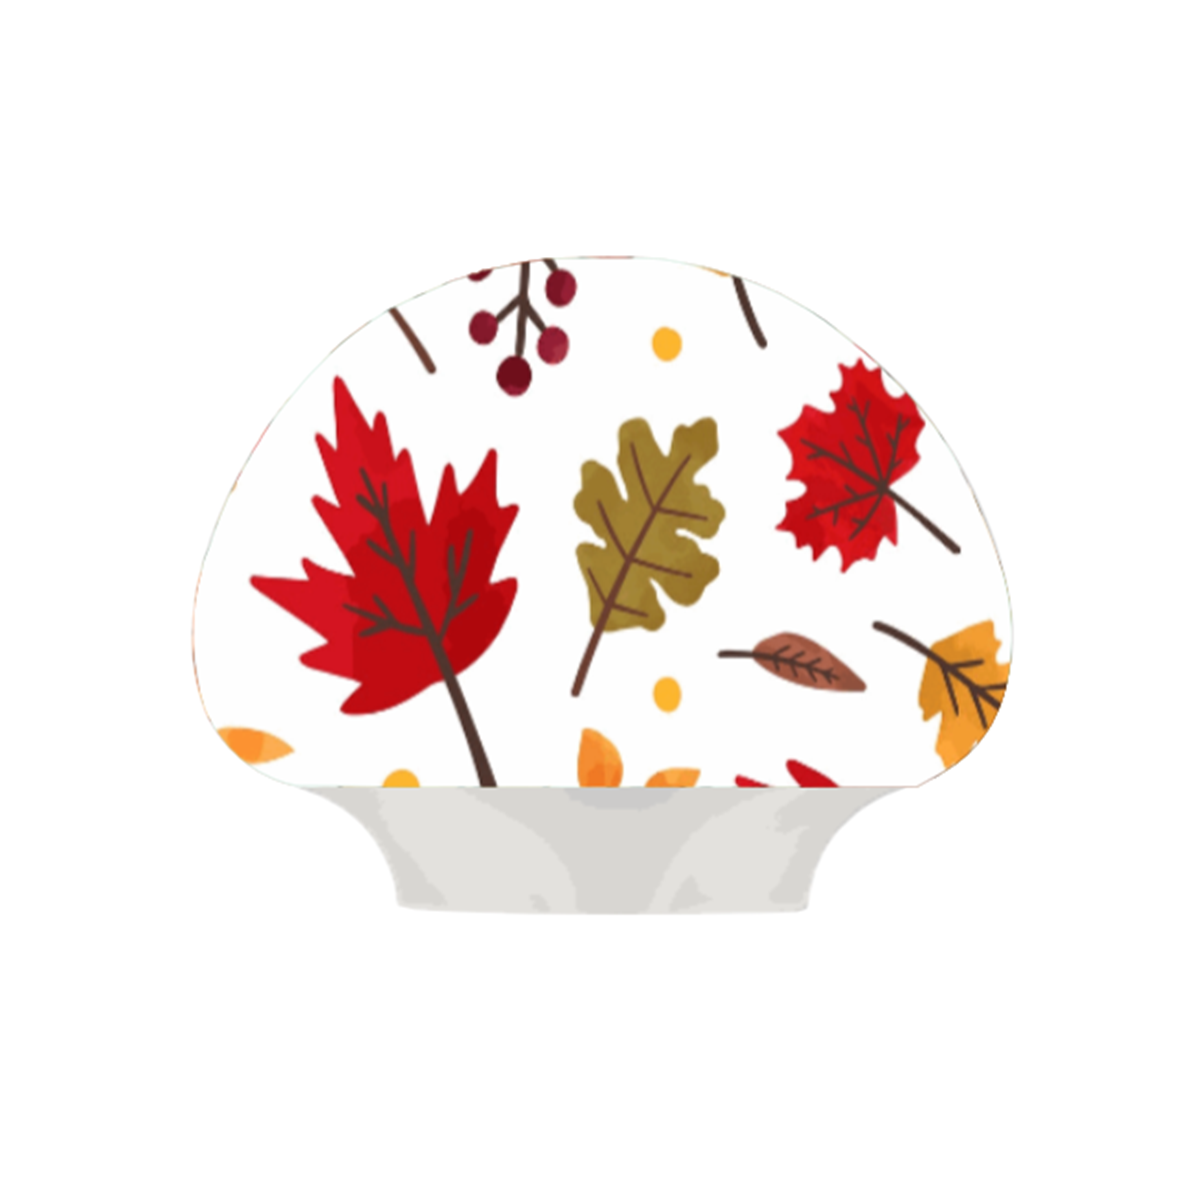 Autumn/Fall Designs